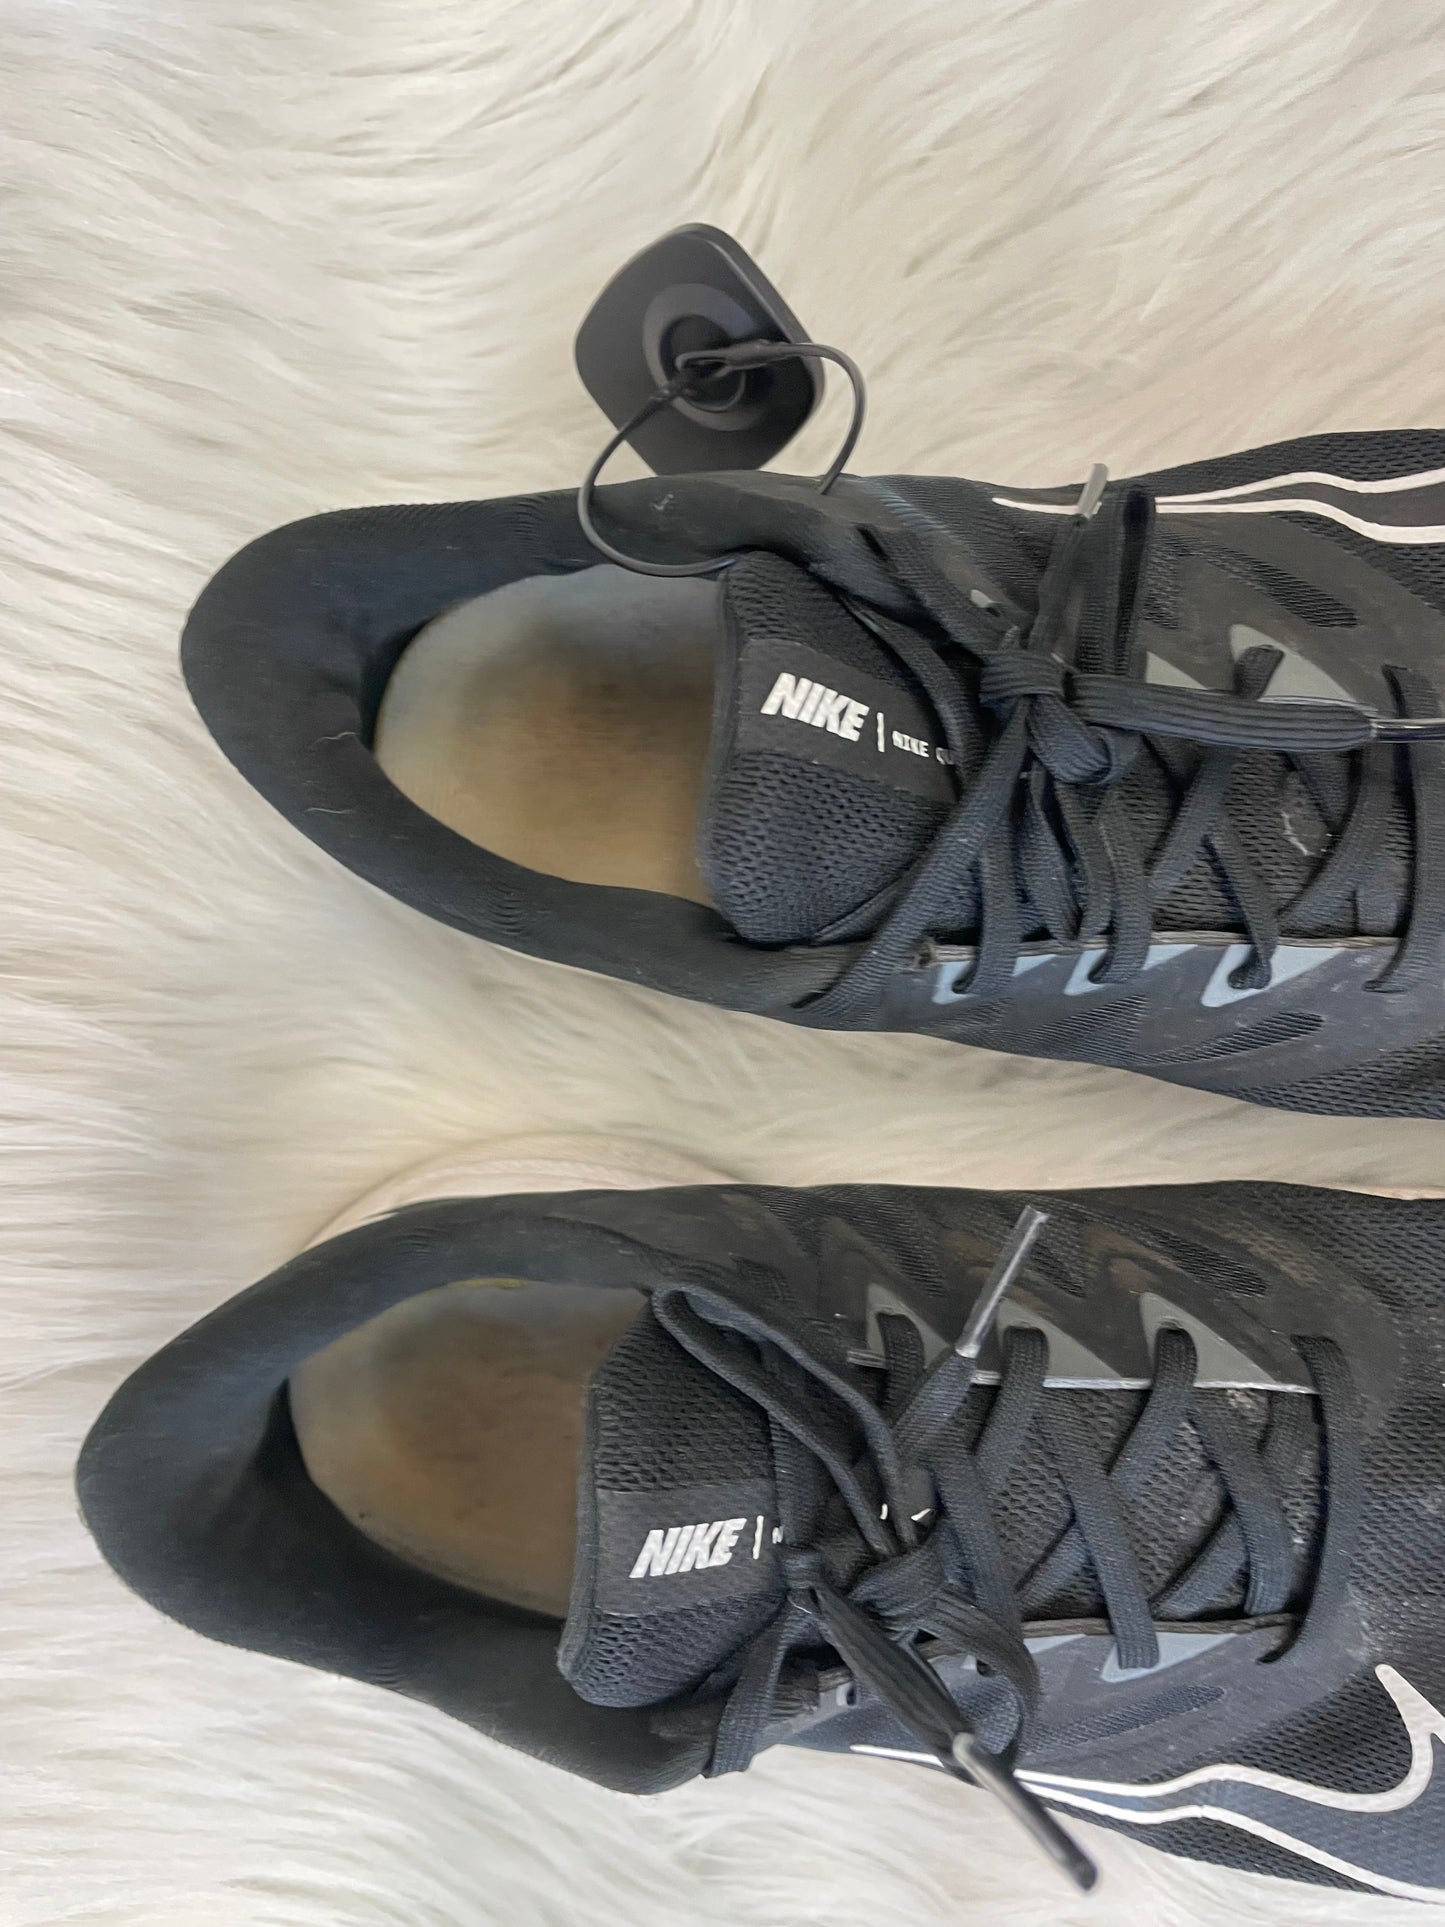 Black & White Shoes Athletic Nike, Size 11